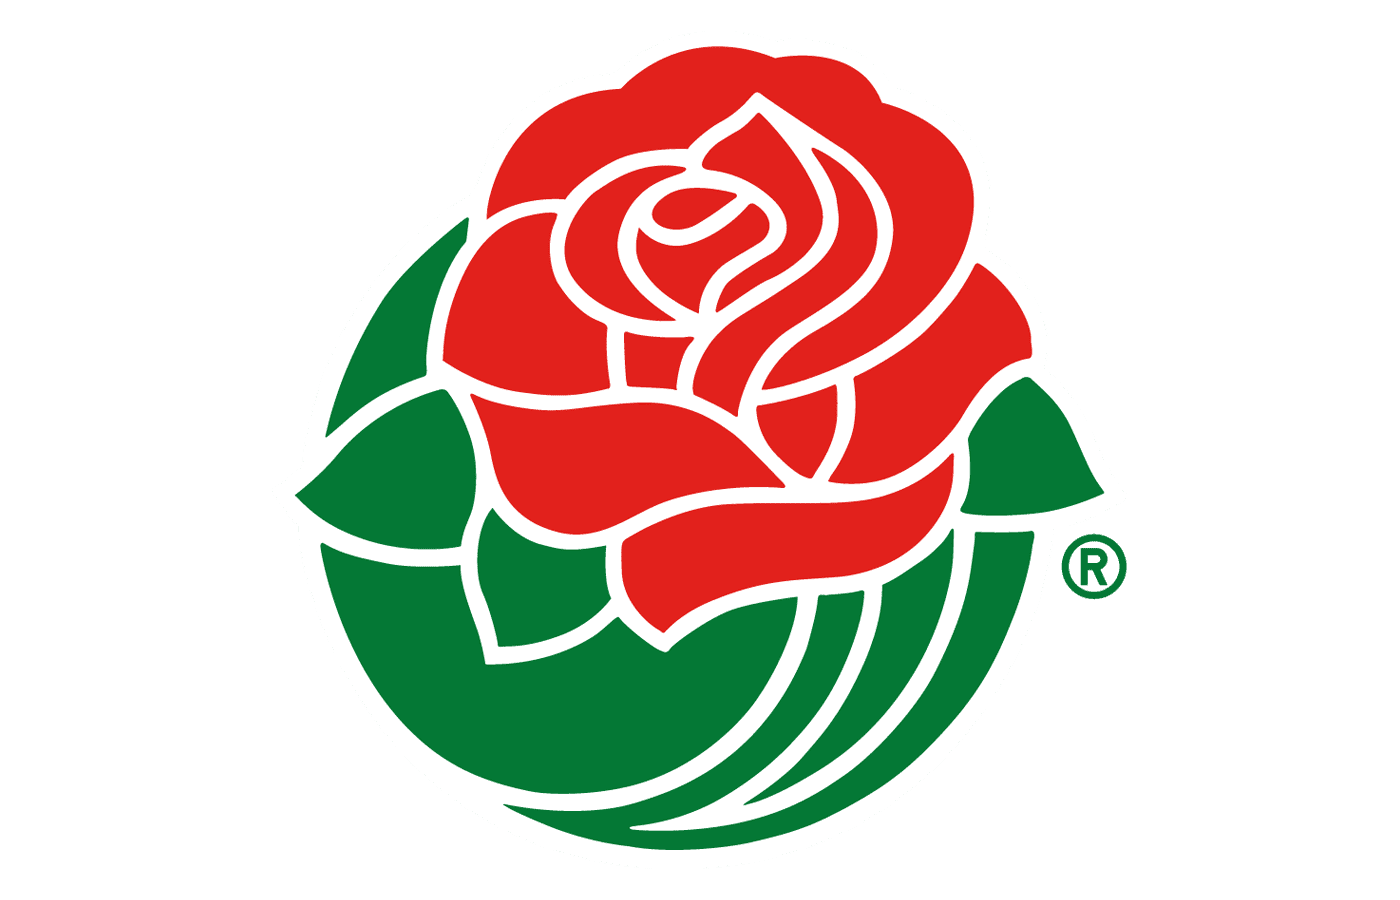 rose bowl logo png